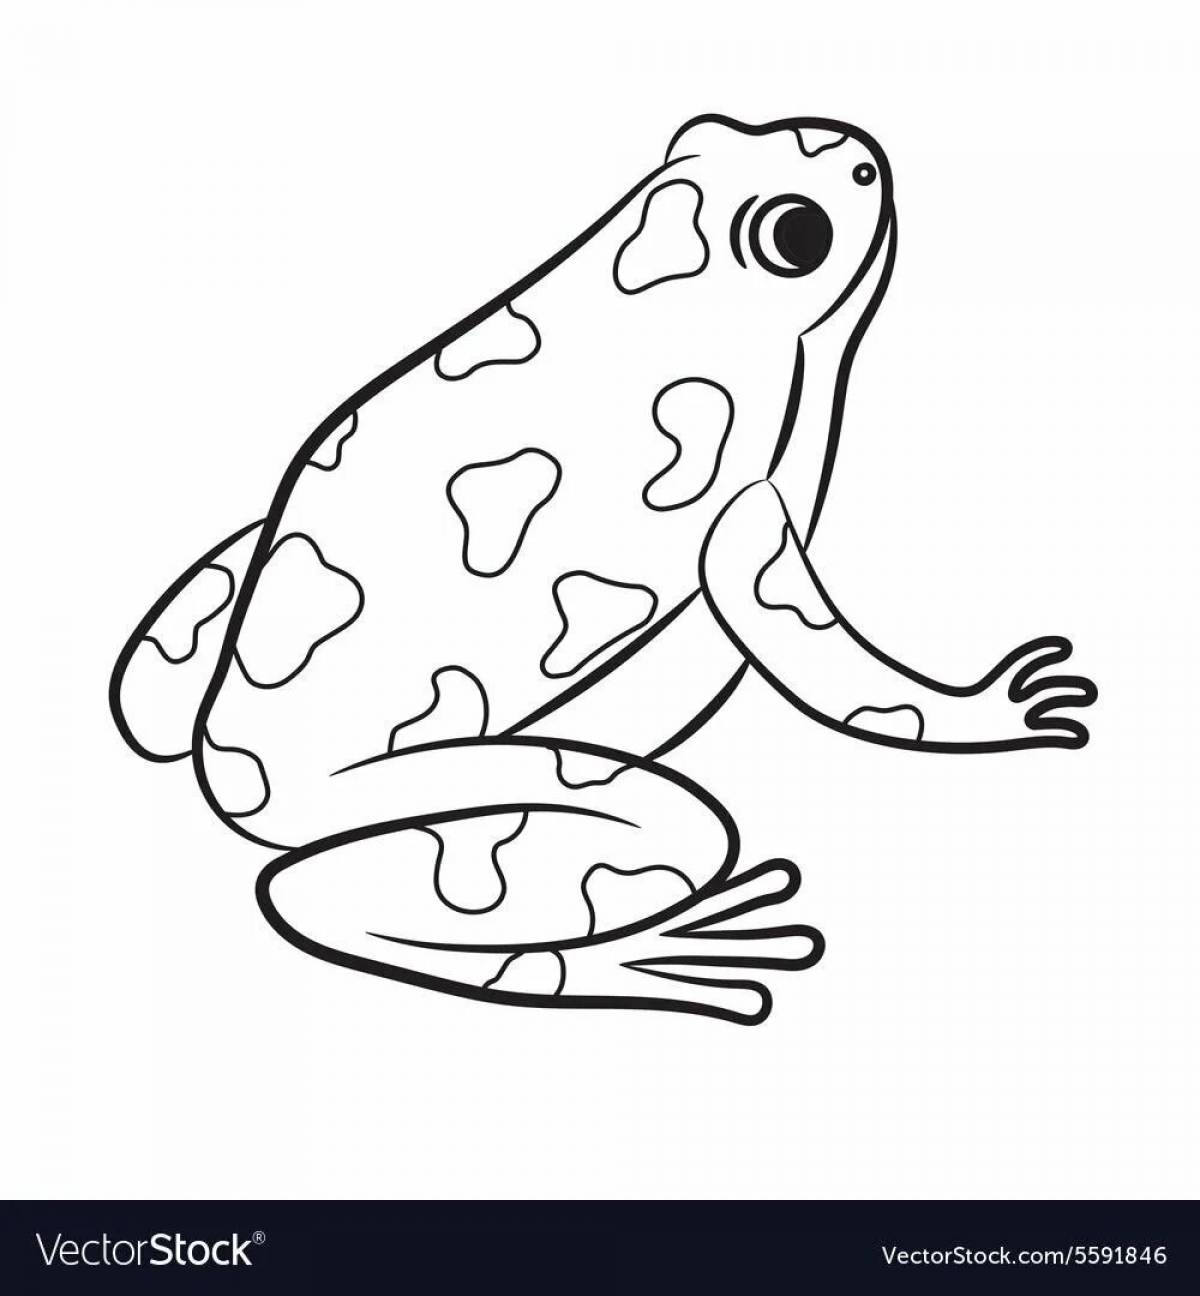 Peppy coloring cute frog